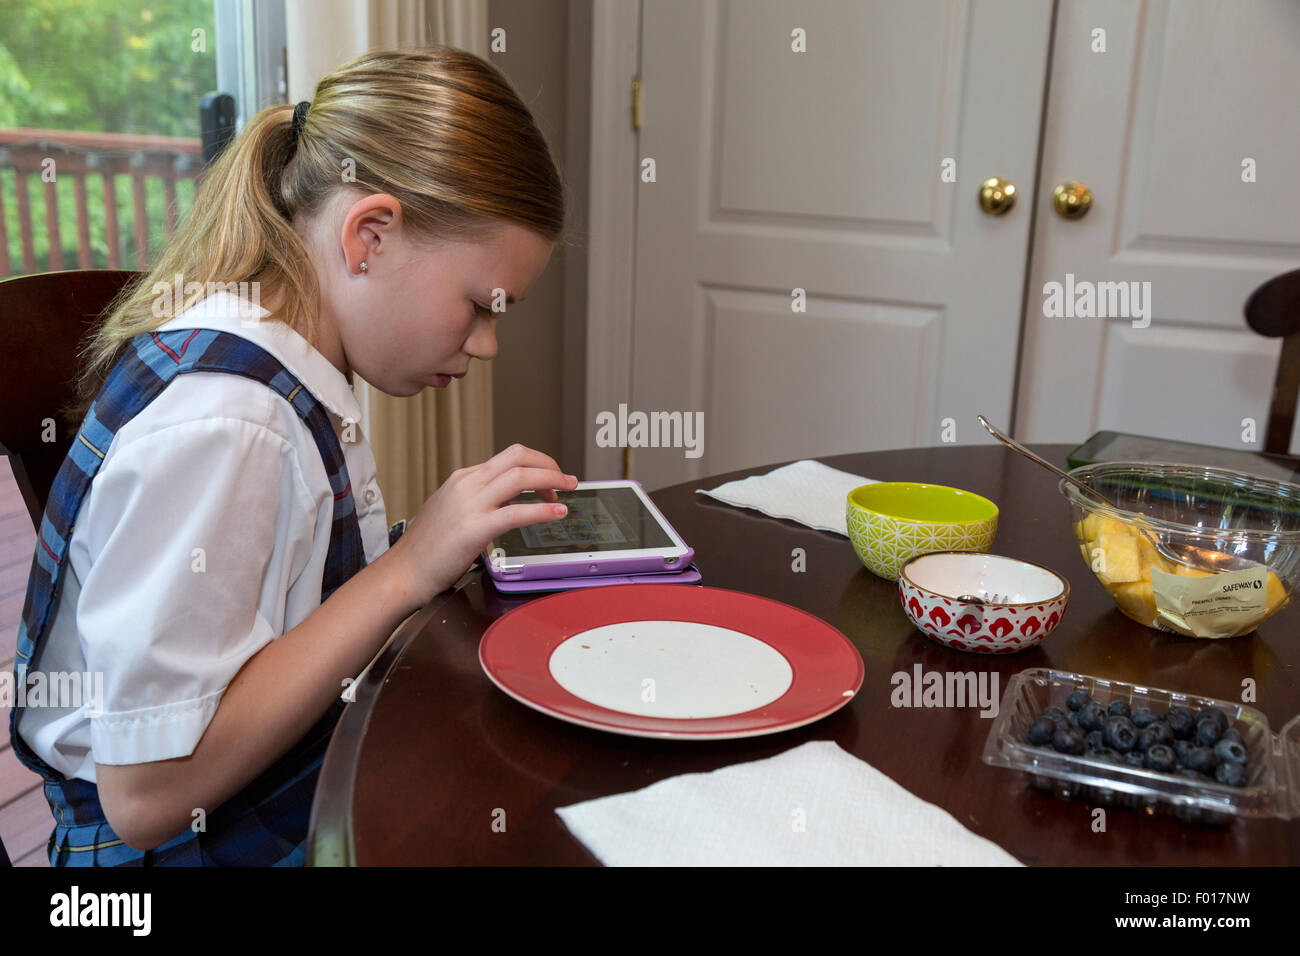 Los Modernos estudiante de primaria: un juego en su iPad en el desayuno. Señor Foto de stock